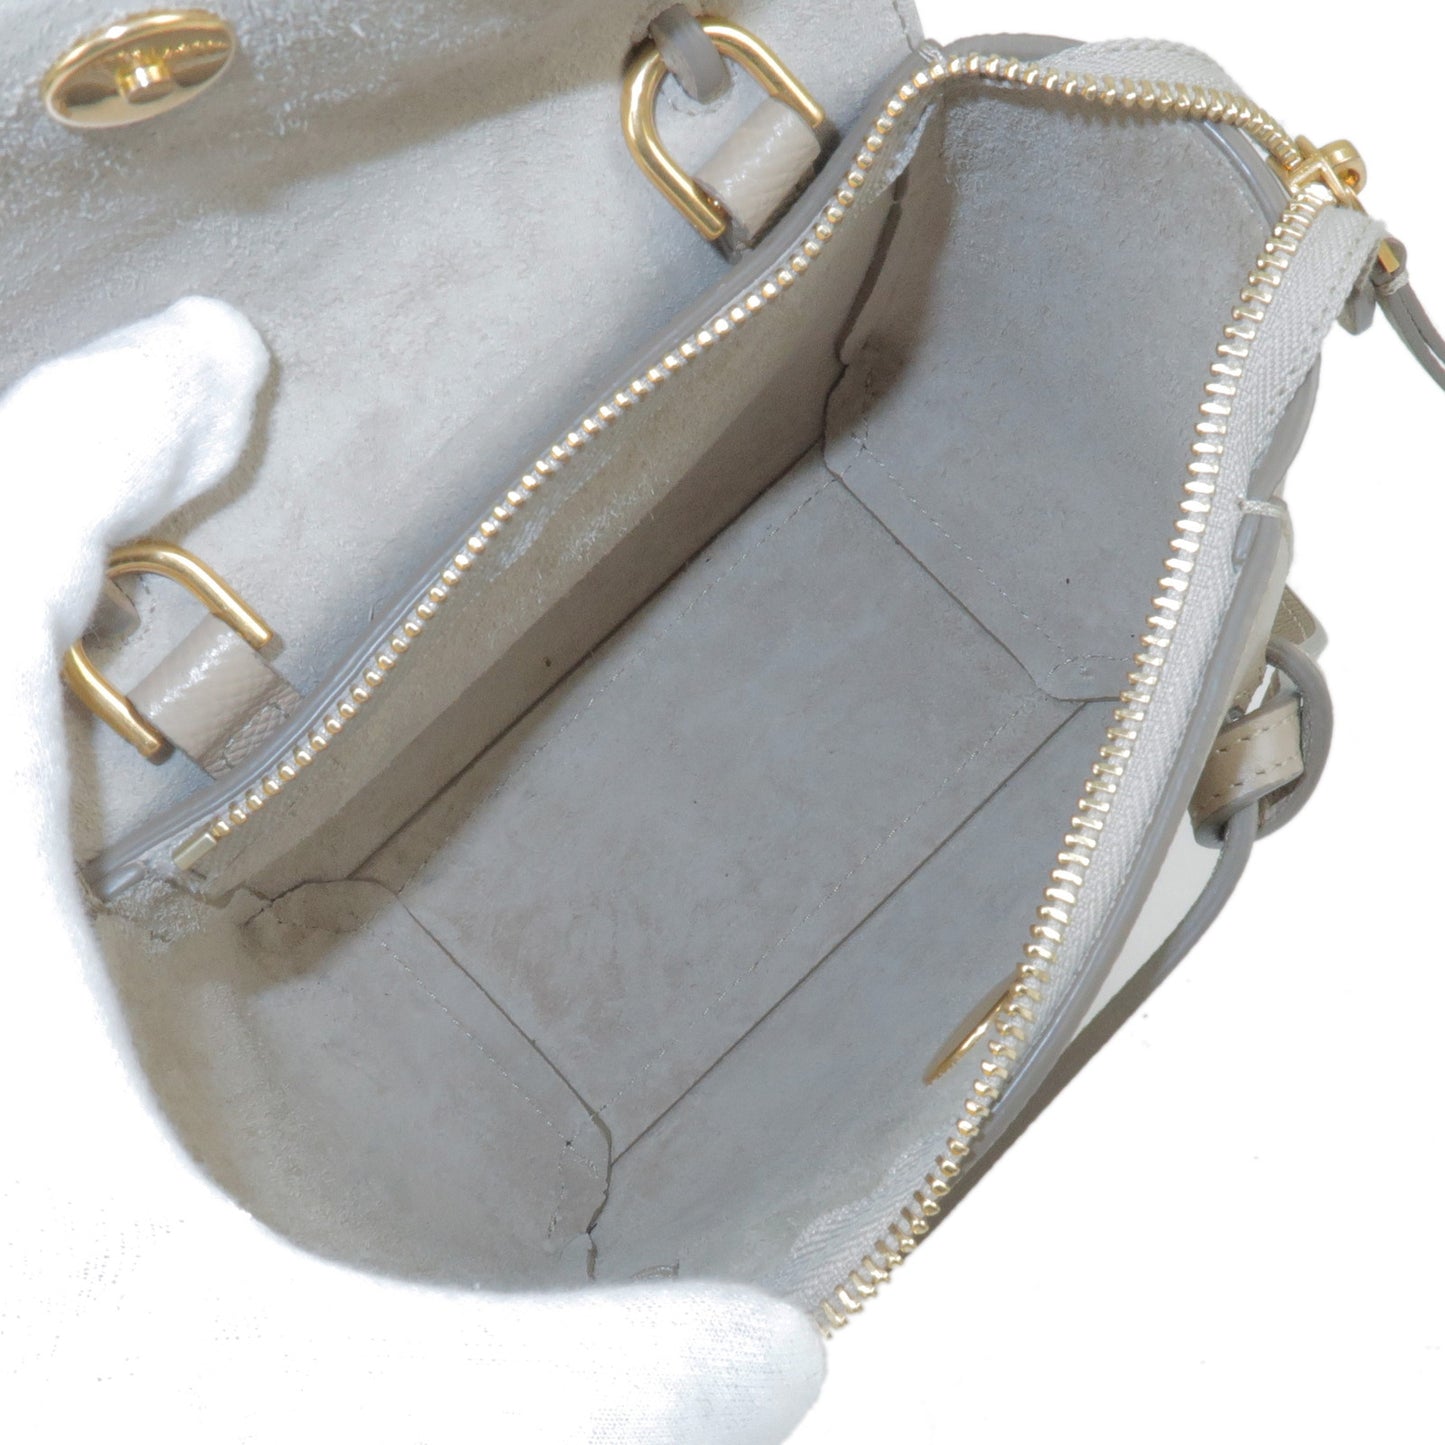 CELINE Leather Pico Belt Bag Shoulder Bag Light Taupe 194263